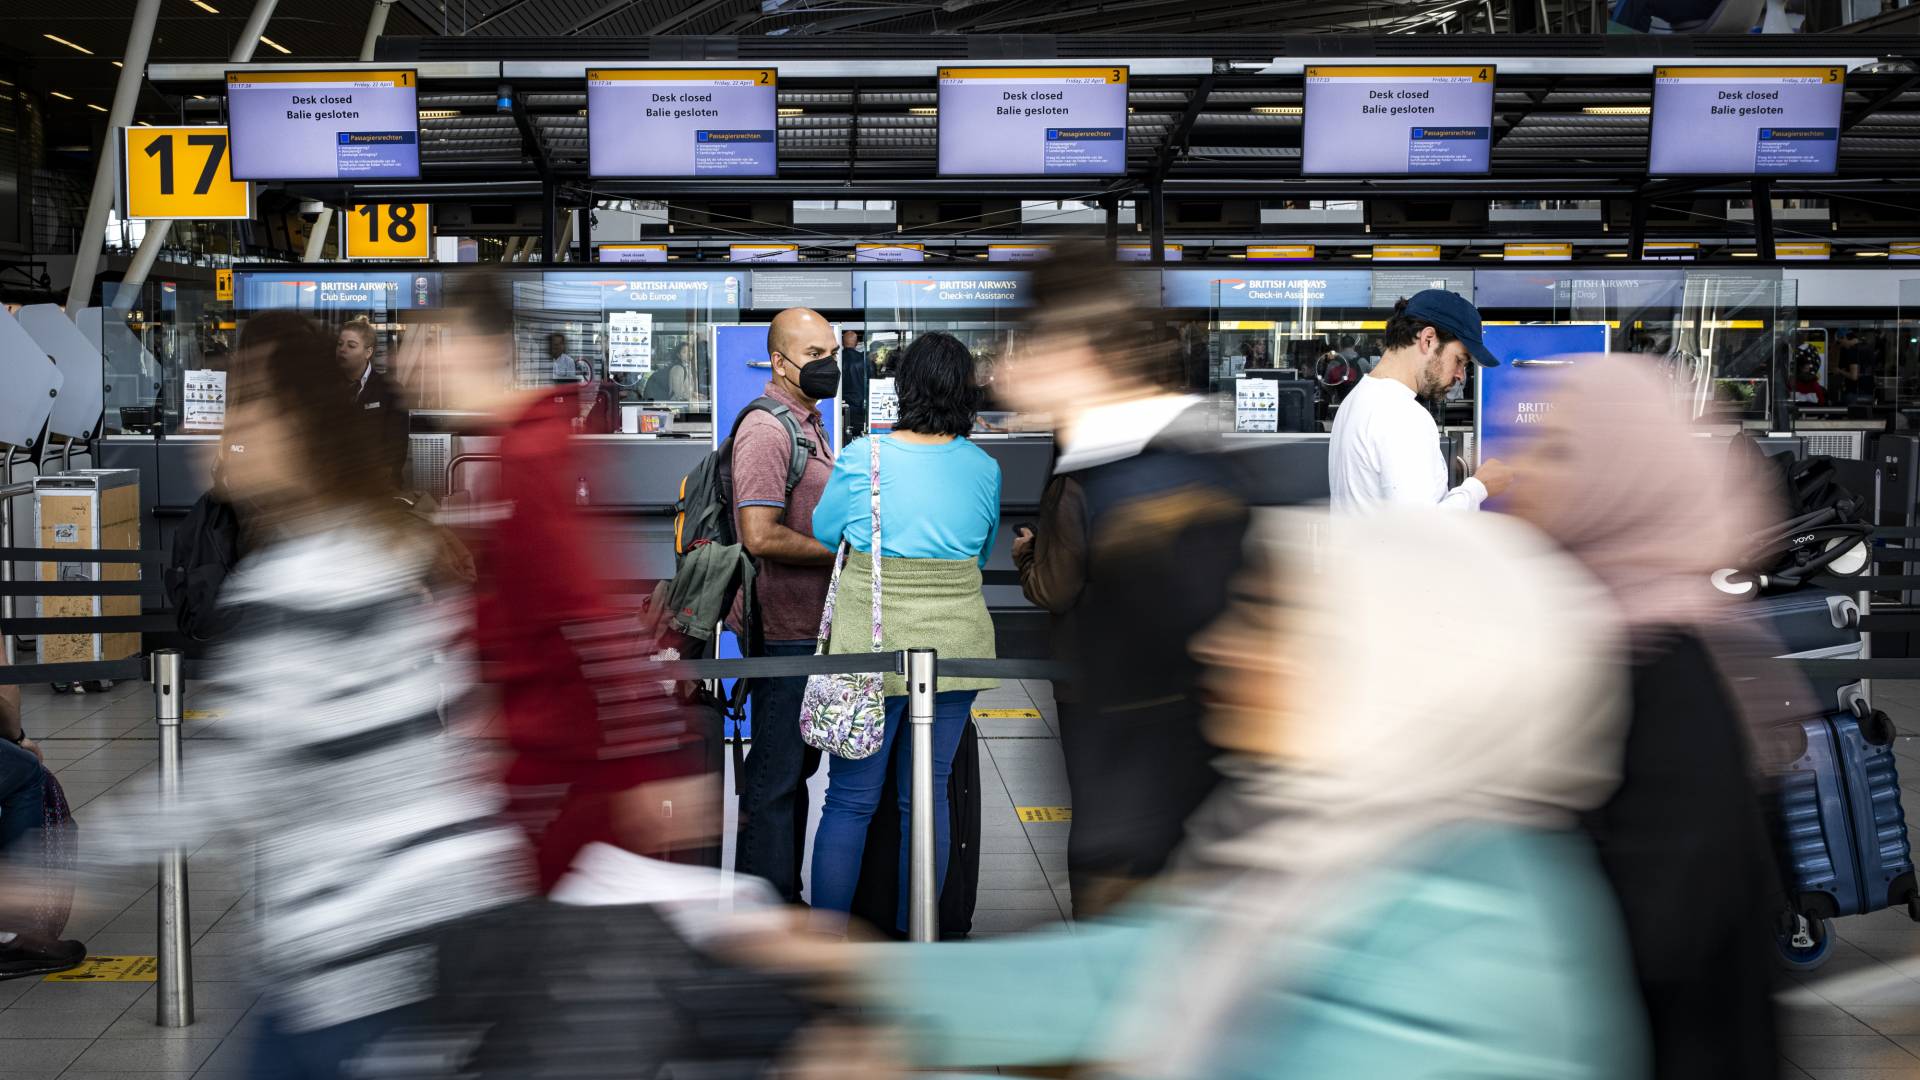 الخطوط الجوية الملكية: مطار سيخبول مزدحم للغاية، ويقرر أنْ يضع حداً للمسافرين على متن خطوطه